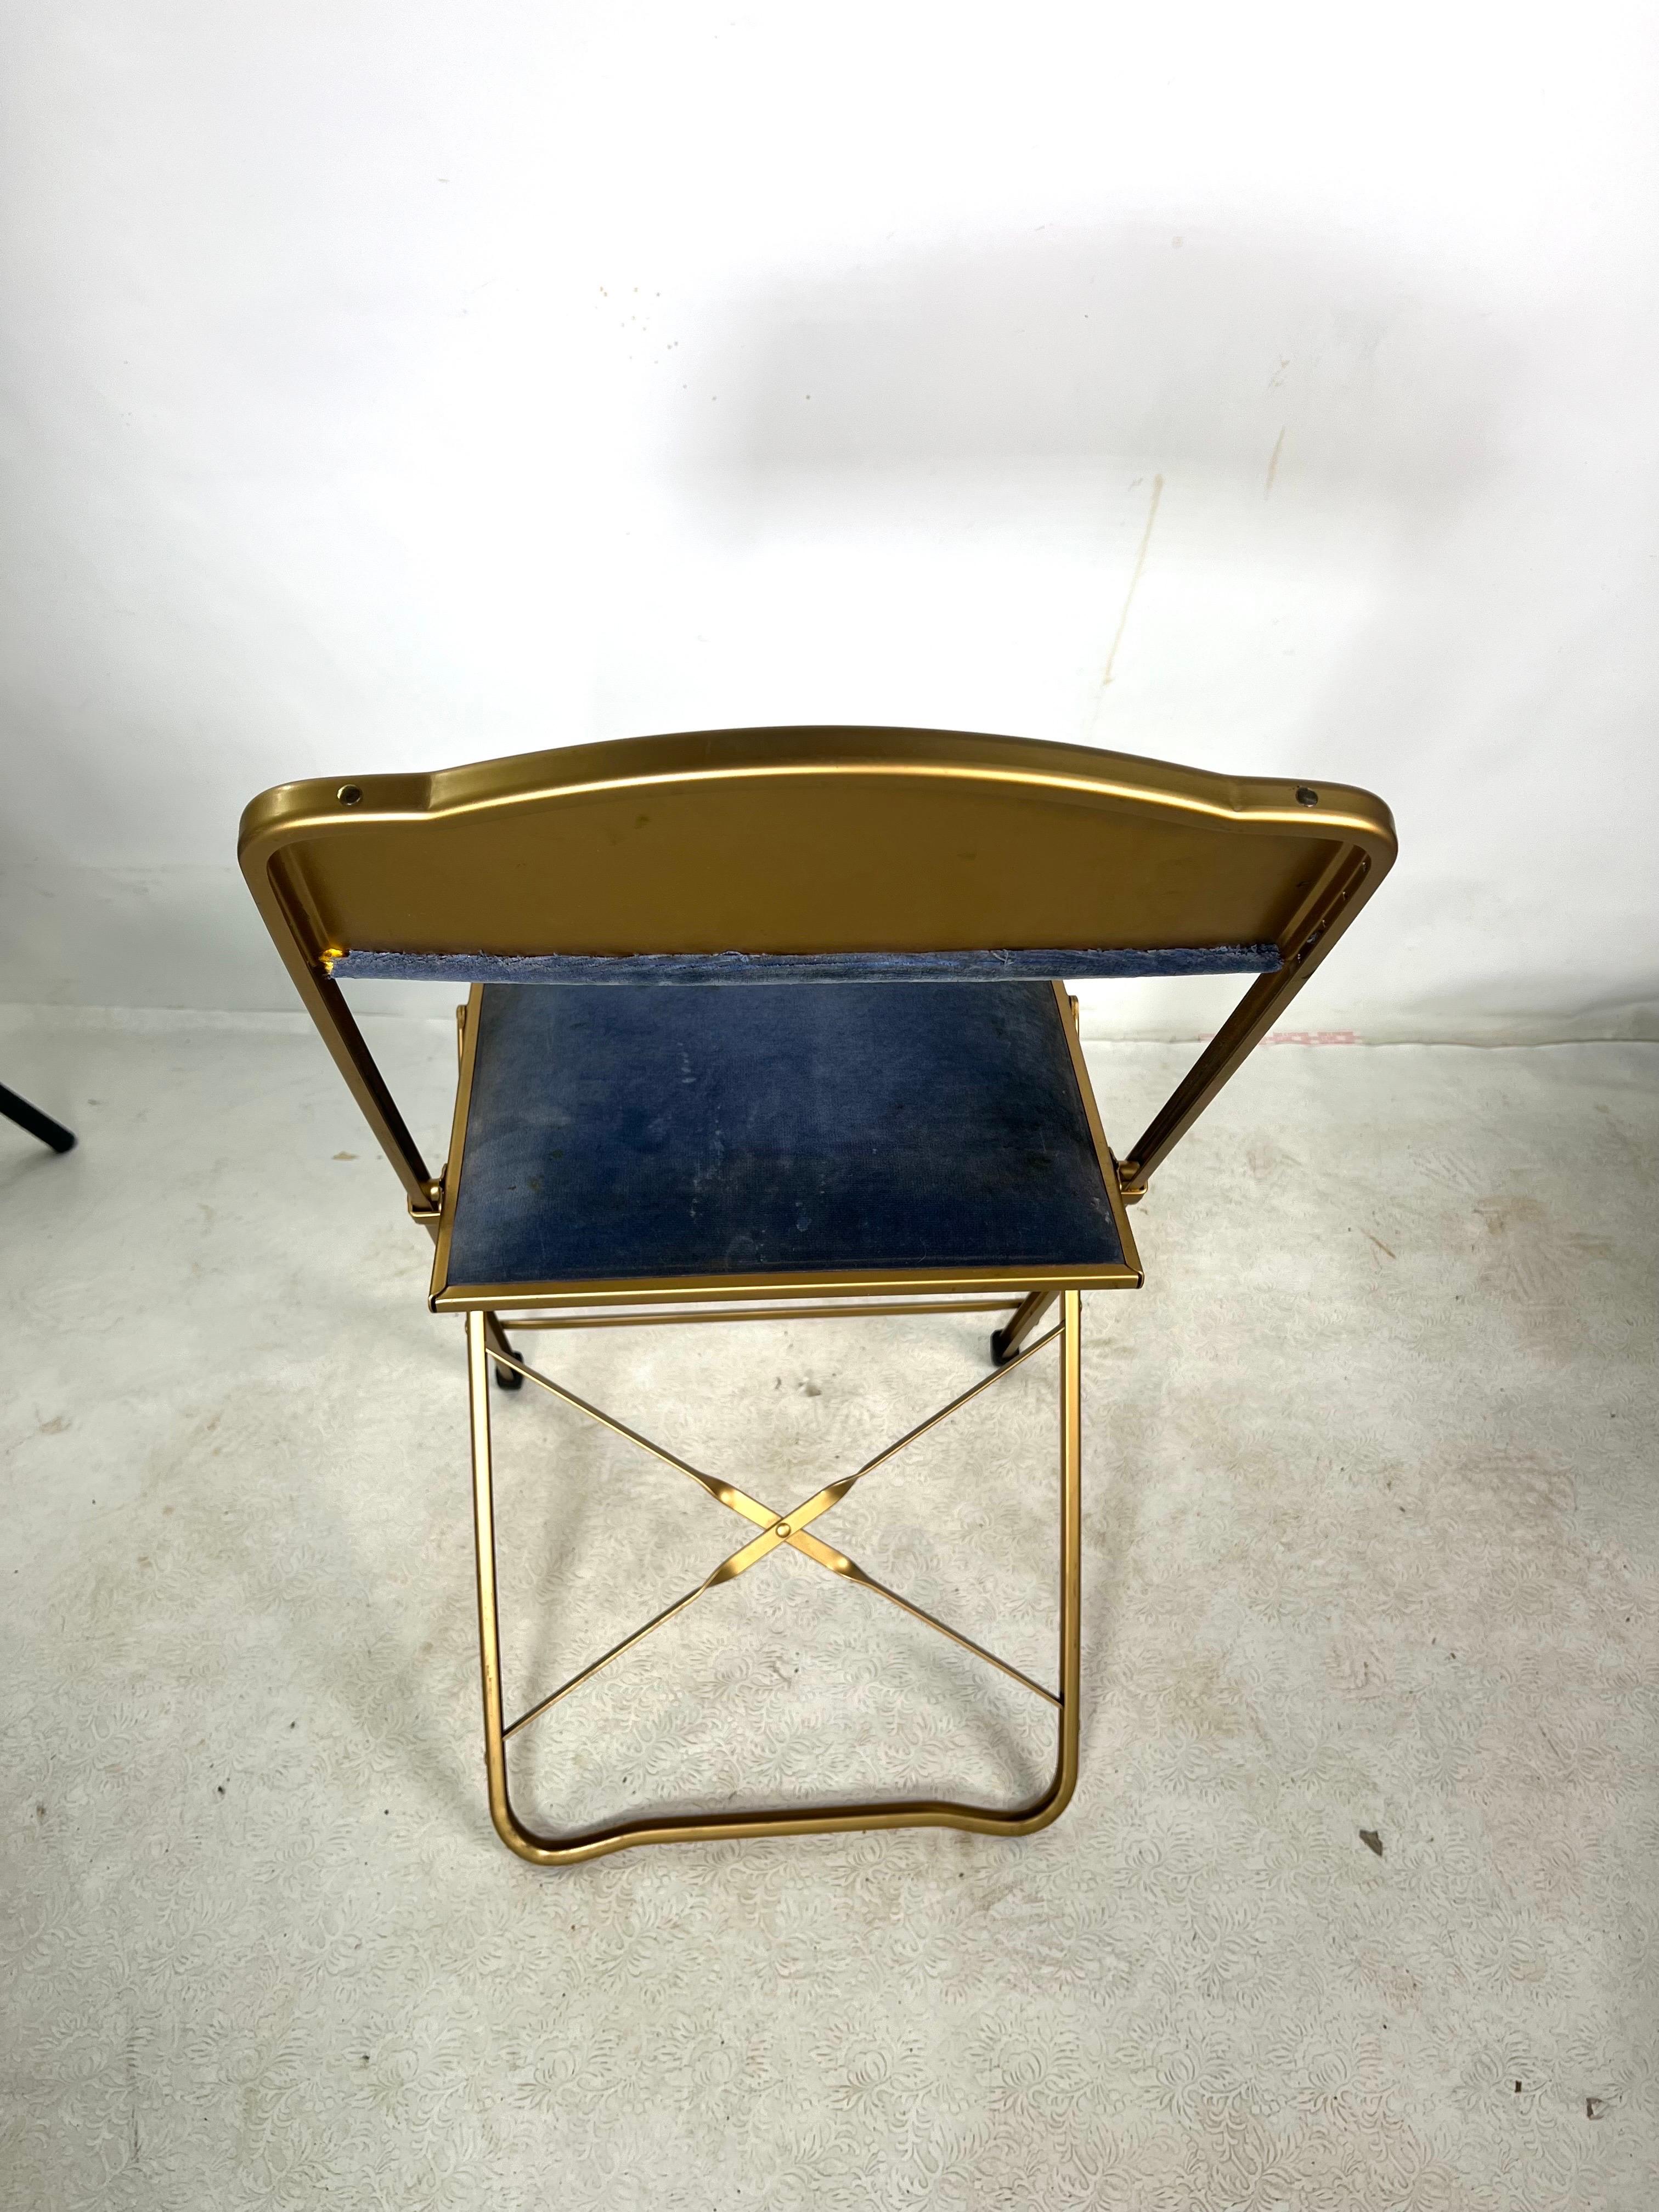 A vendre, cette belle chaise pliante en velours vintage, fabriquée par Fitz Chair & Co. Nous avons actuellement 15 chaises disponibles à l'achat. Chaque chaise coûte 95,00.